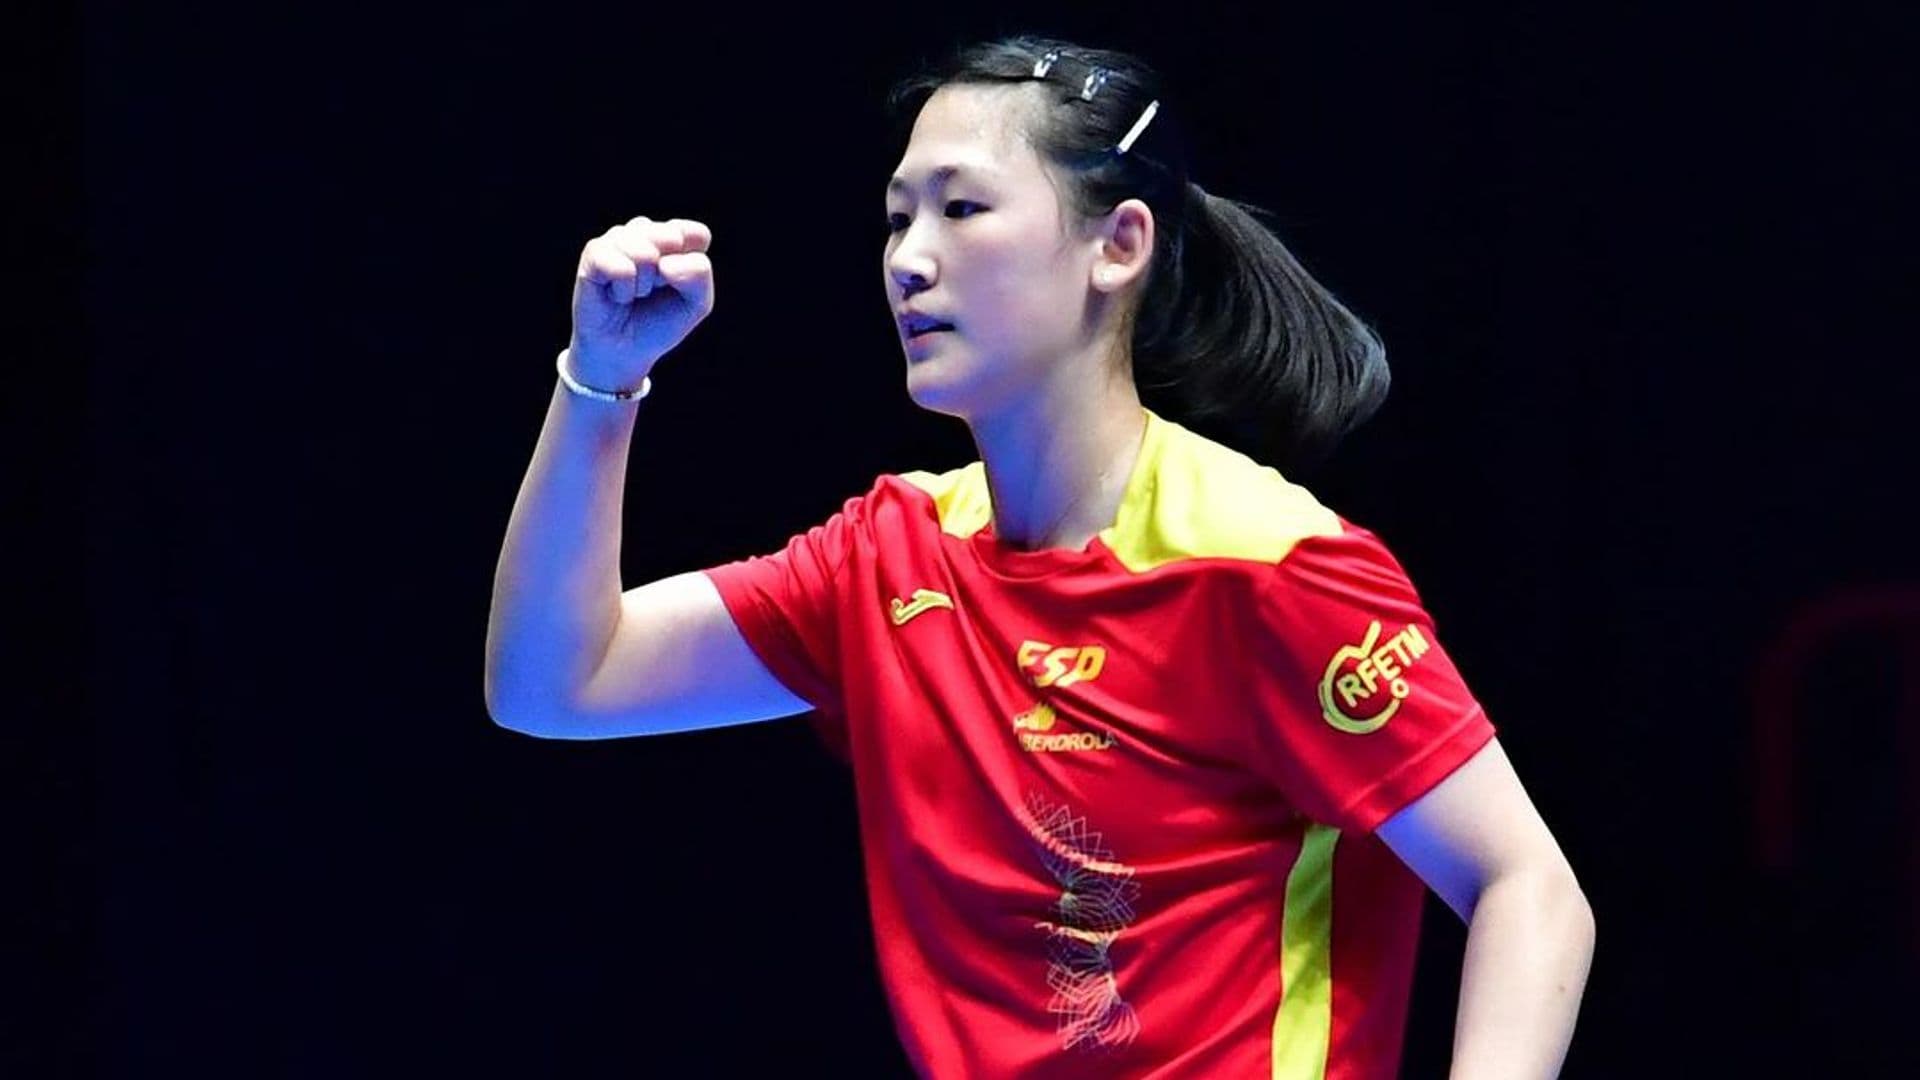 Descubrimos a María Xiao, estandarte del ping pong femenino español en las Olimpiadas: 'Dudo muchas veces de mí'